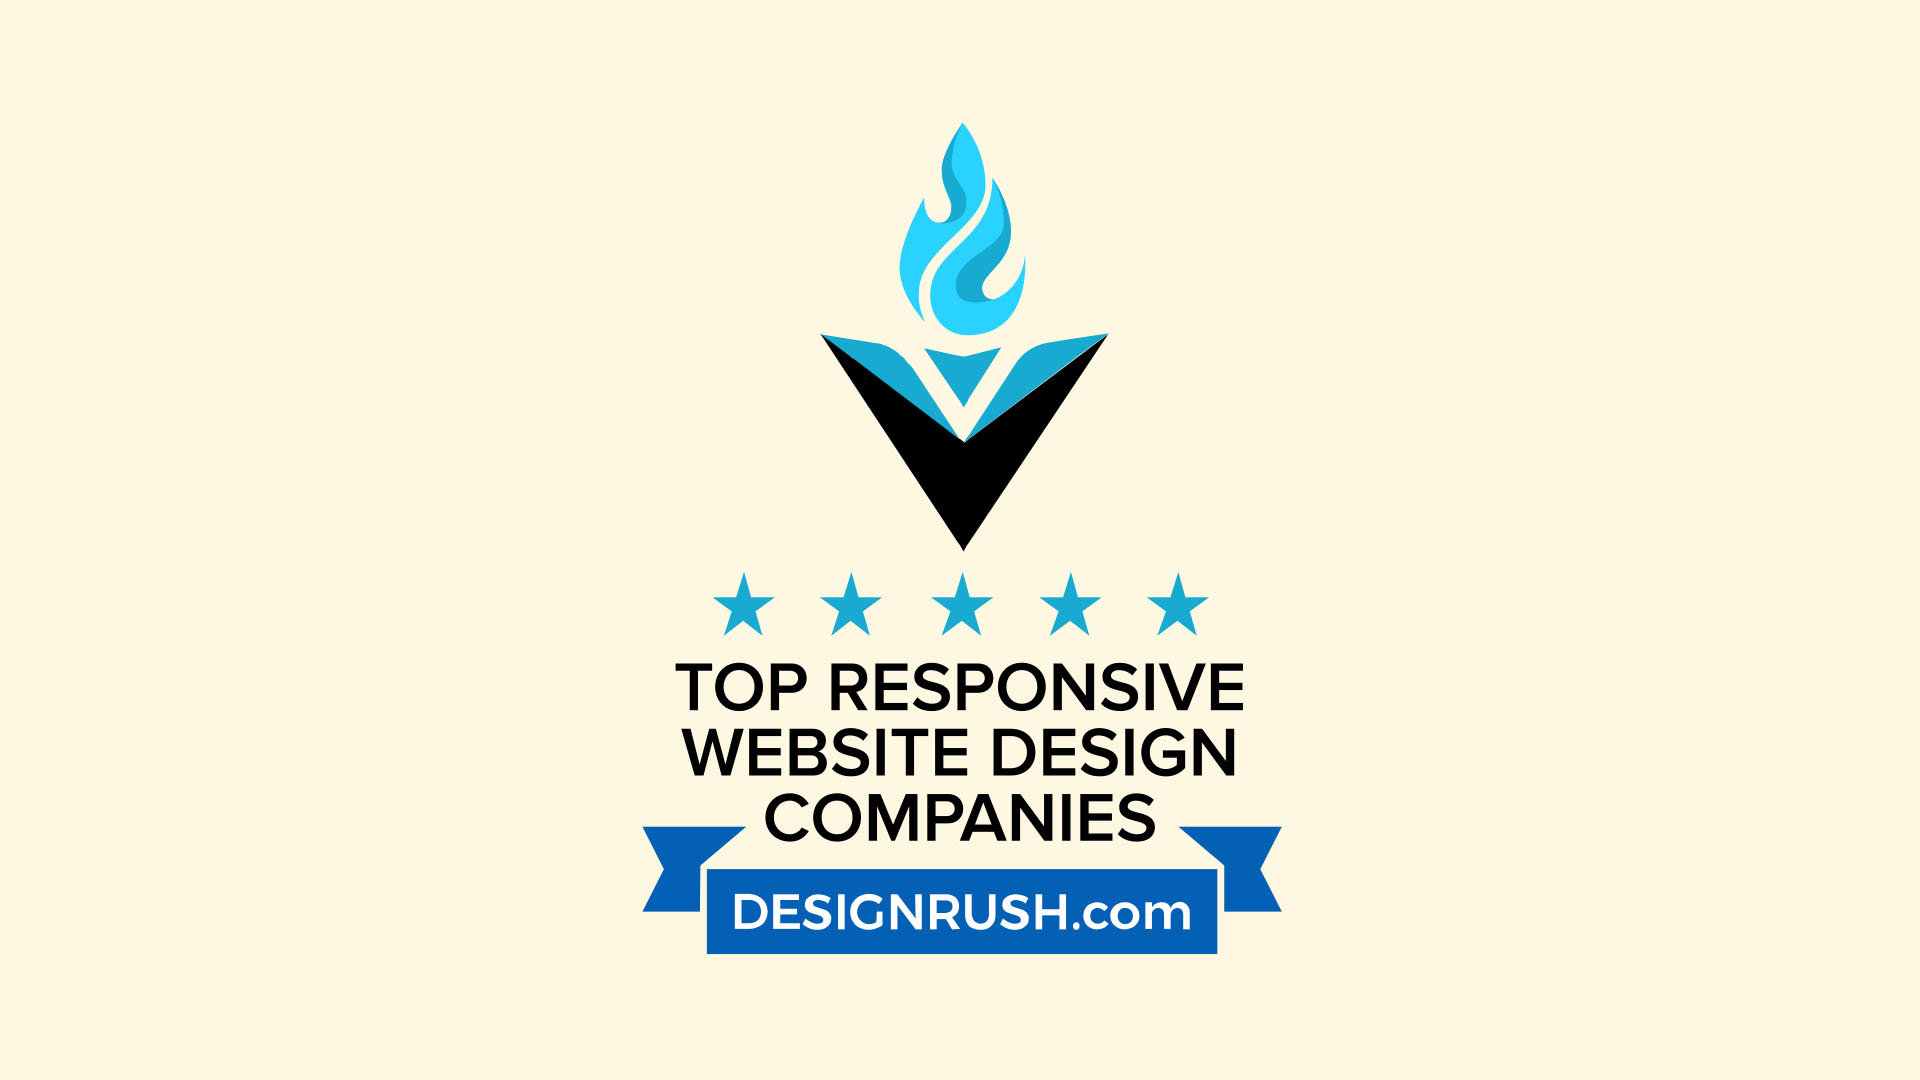 Somar Digital in Top 30 Responsive Web Design Companies